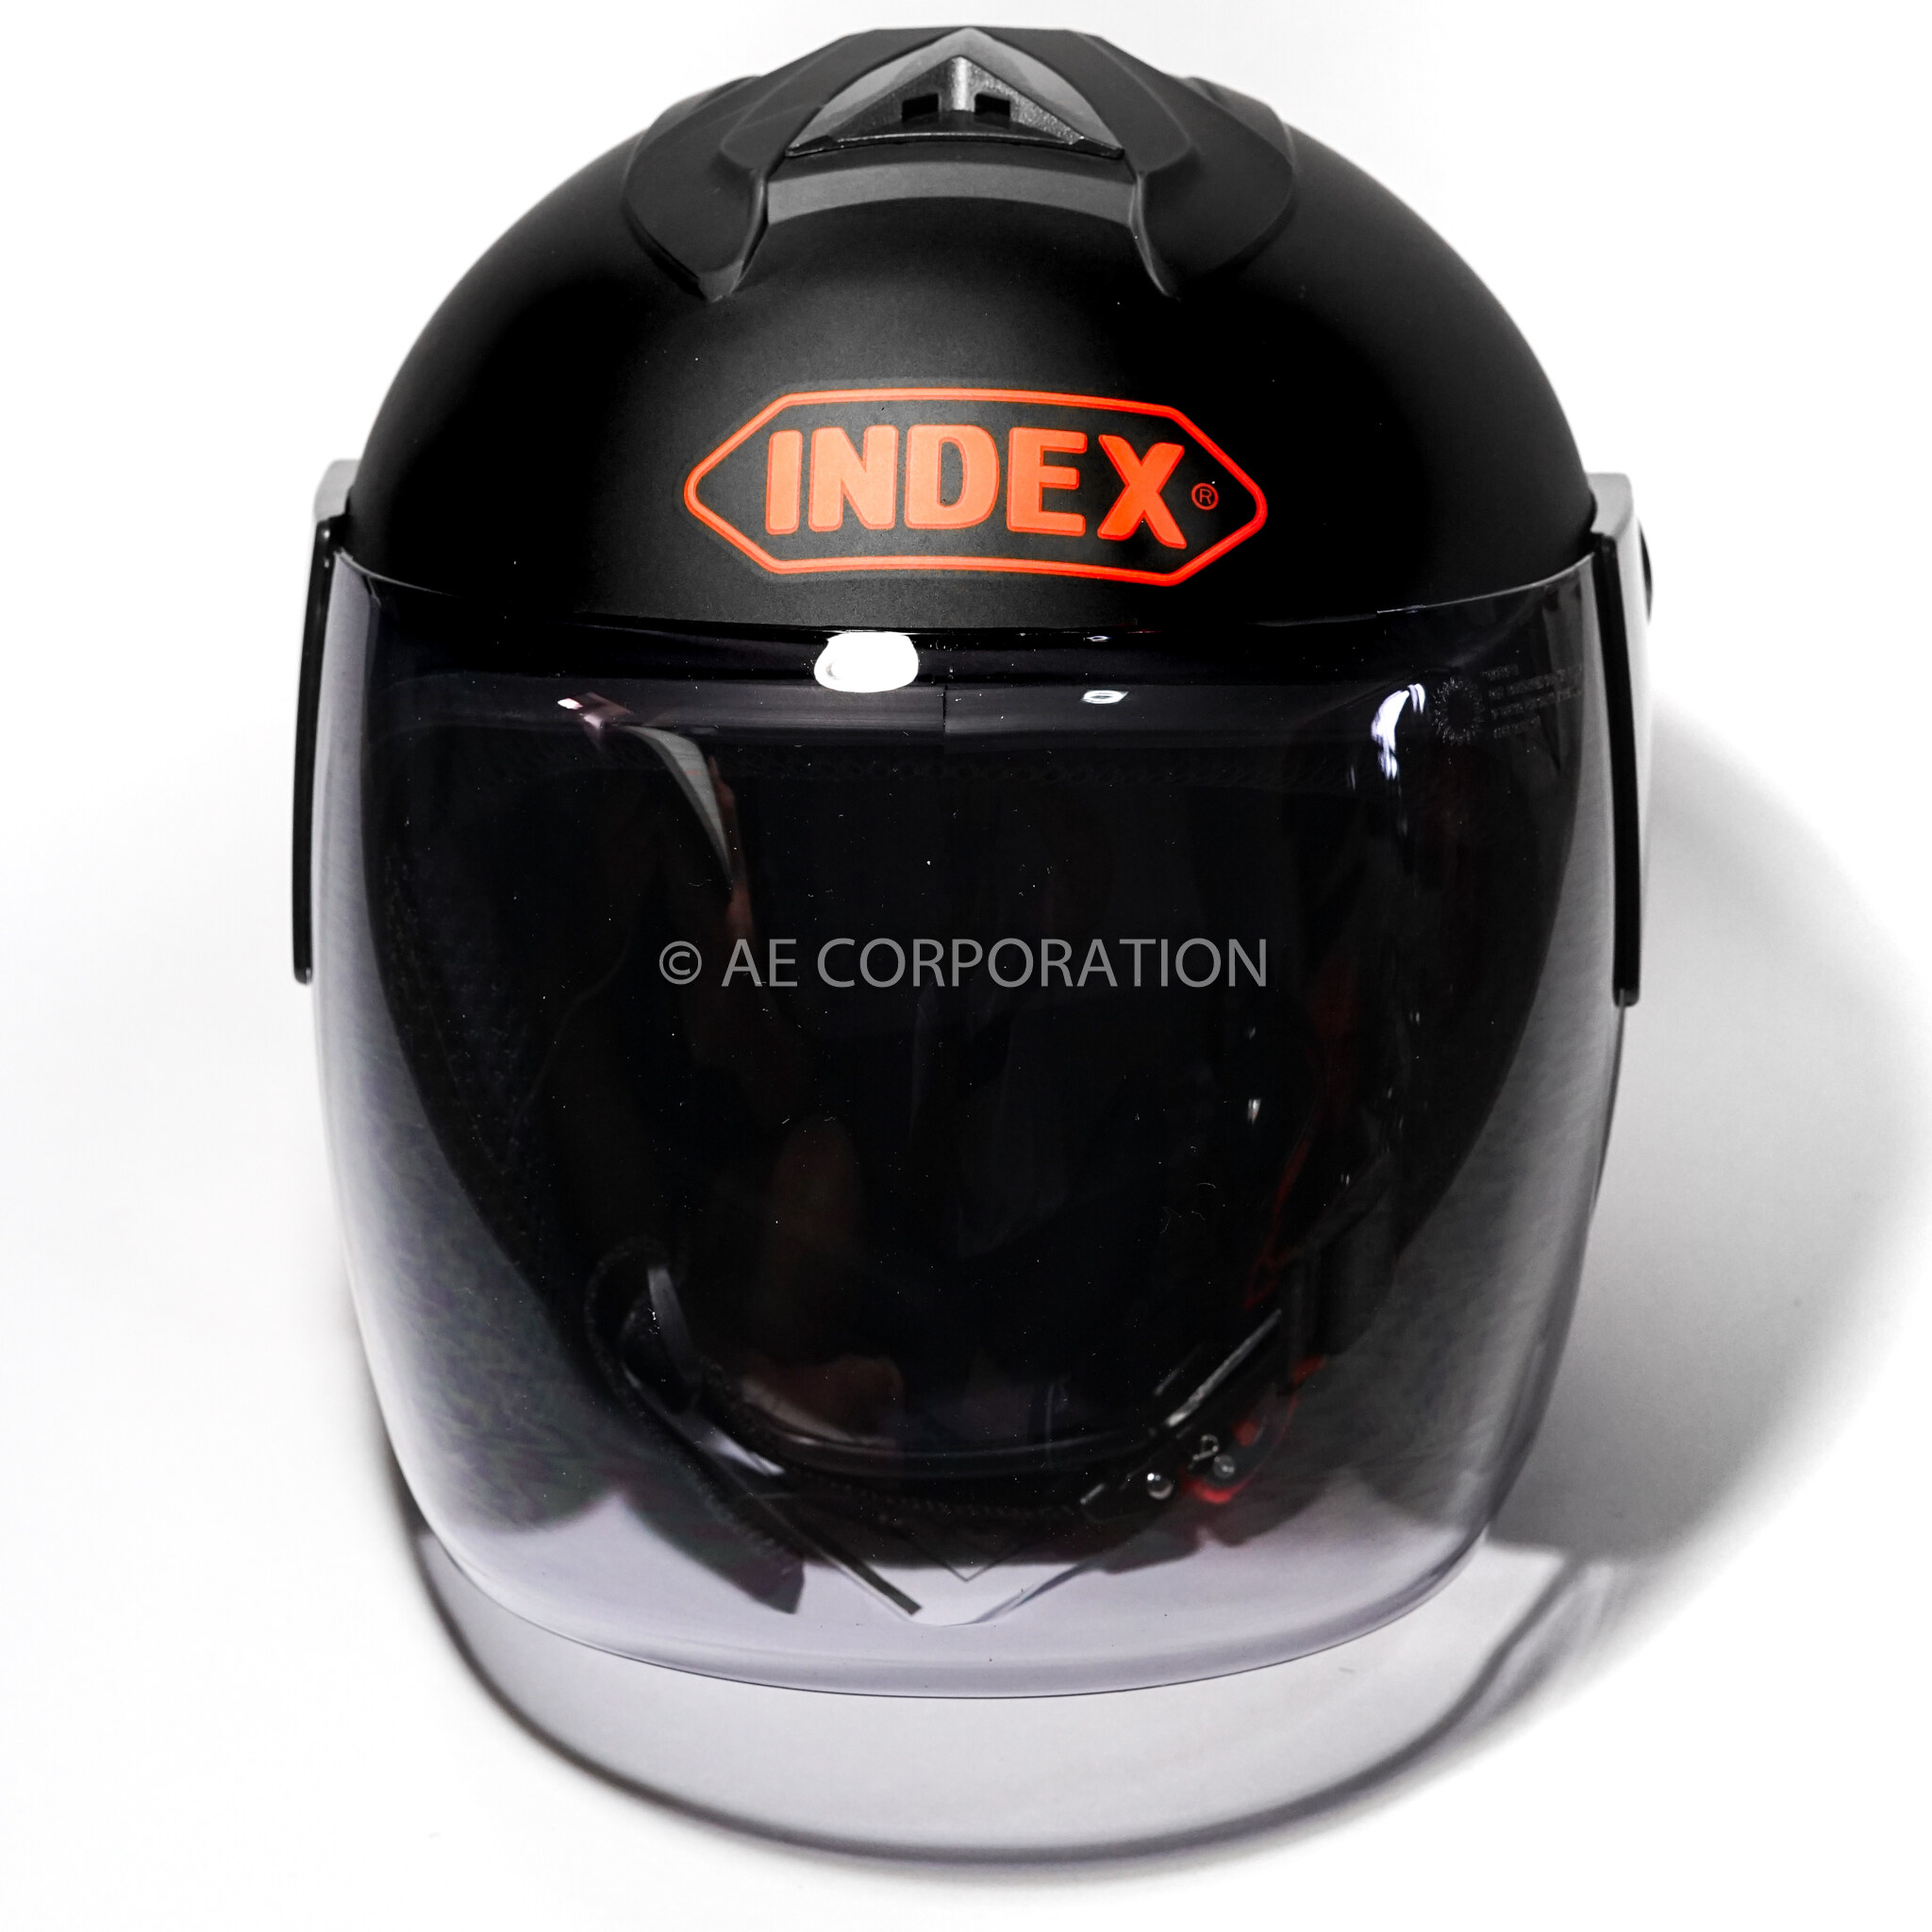 คำอธิบายเพิ่มเติมเกี่ยวกับ หมวกกันน็อค INDEX DUNK NEW หมวกกันน็อก ของแท้100% ไซต์L สีดำด้าน 300IQ Racing